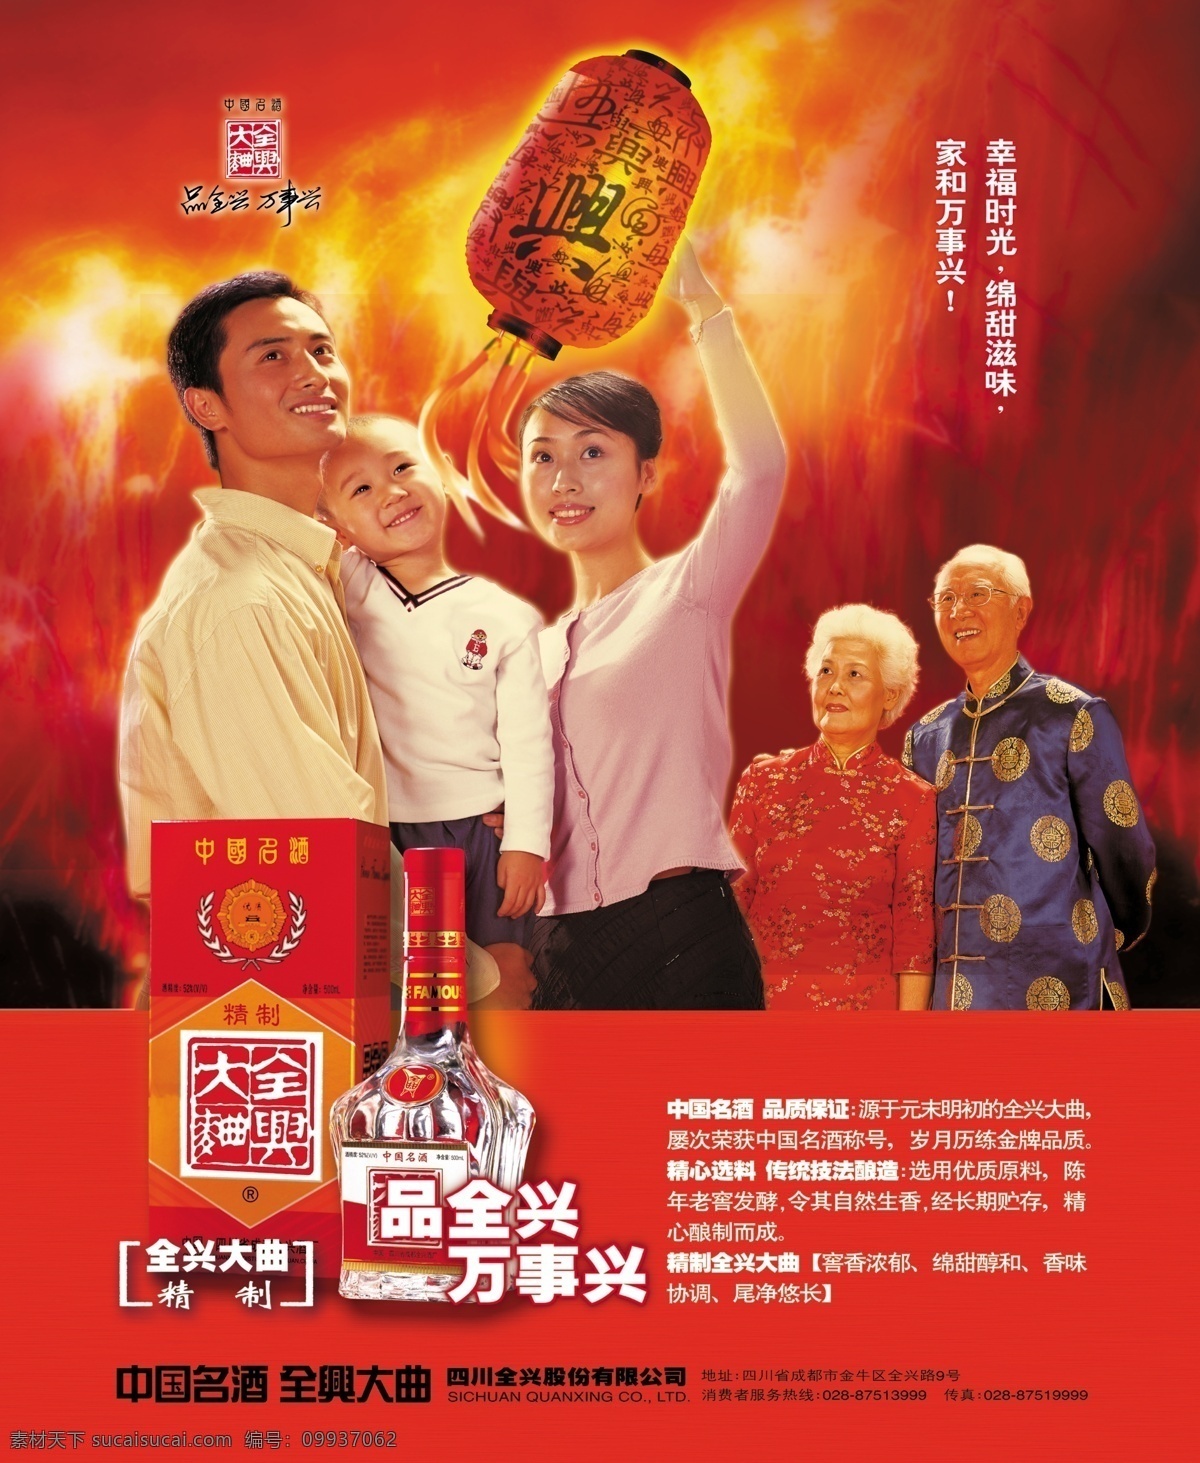 中国 名酒 全兴 大典 广告 中国名酒 幸福家庭 幸福时光 家和万事兴 火红 风格 品质保证 全兴大典 广告海报 分层素材 滋味 包装 psd素材 红色